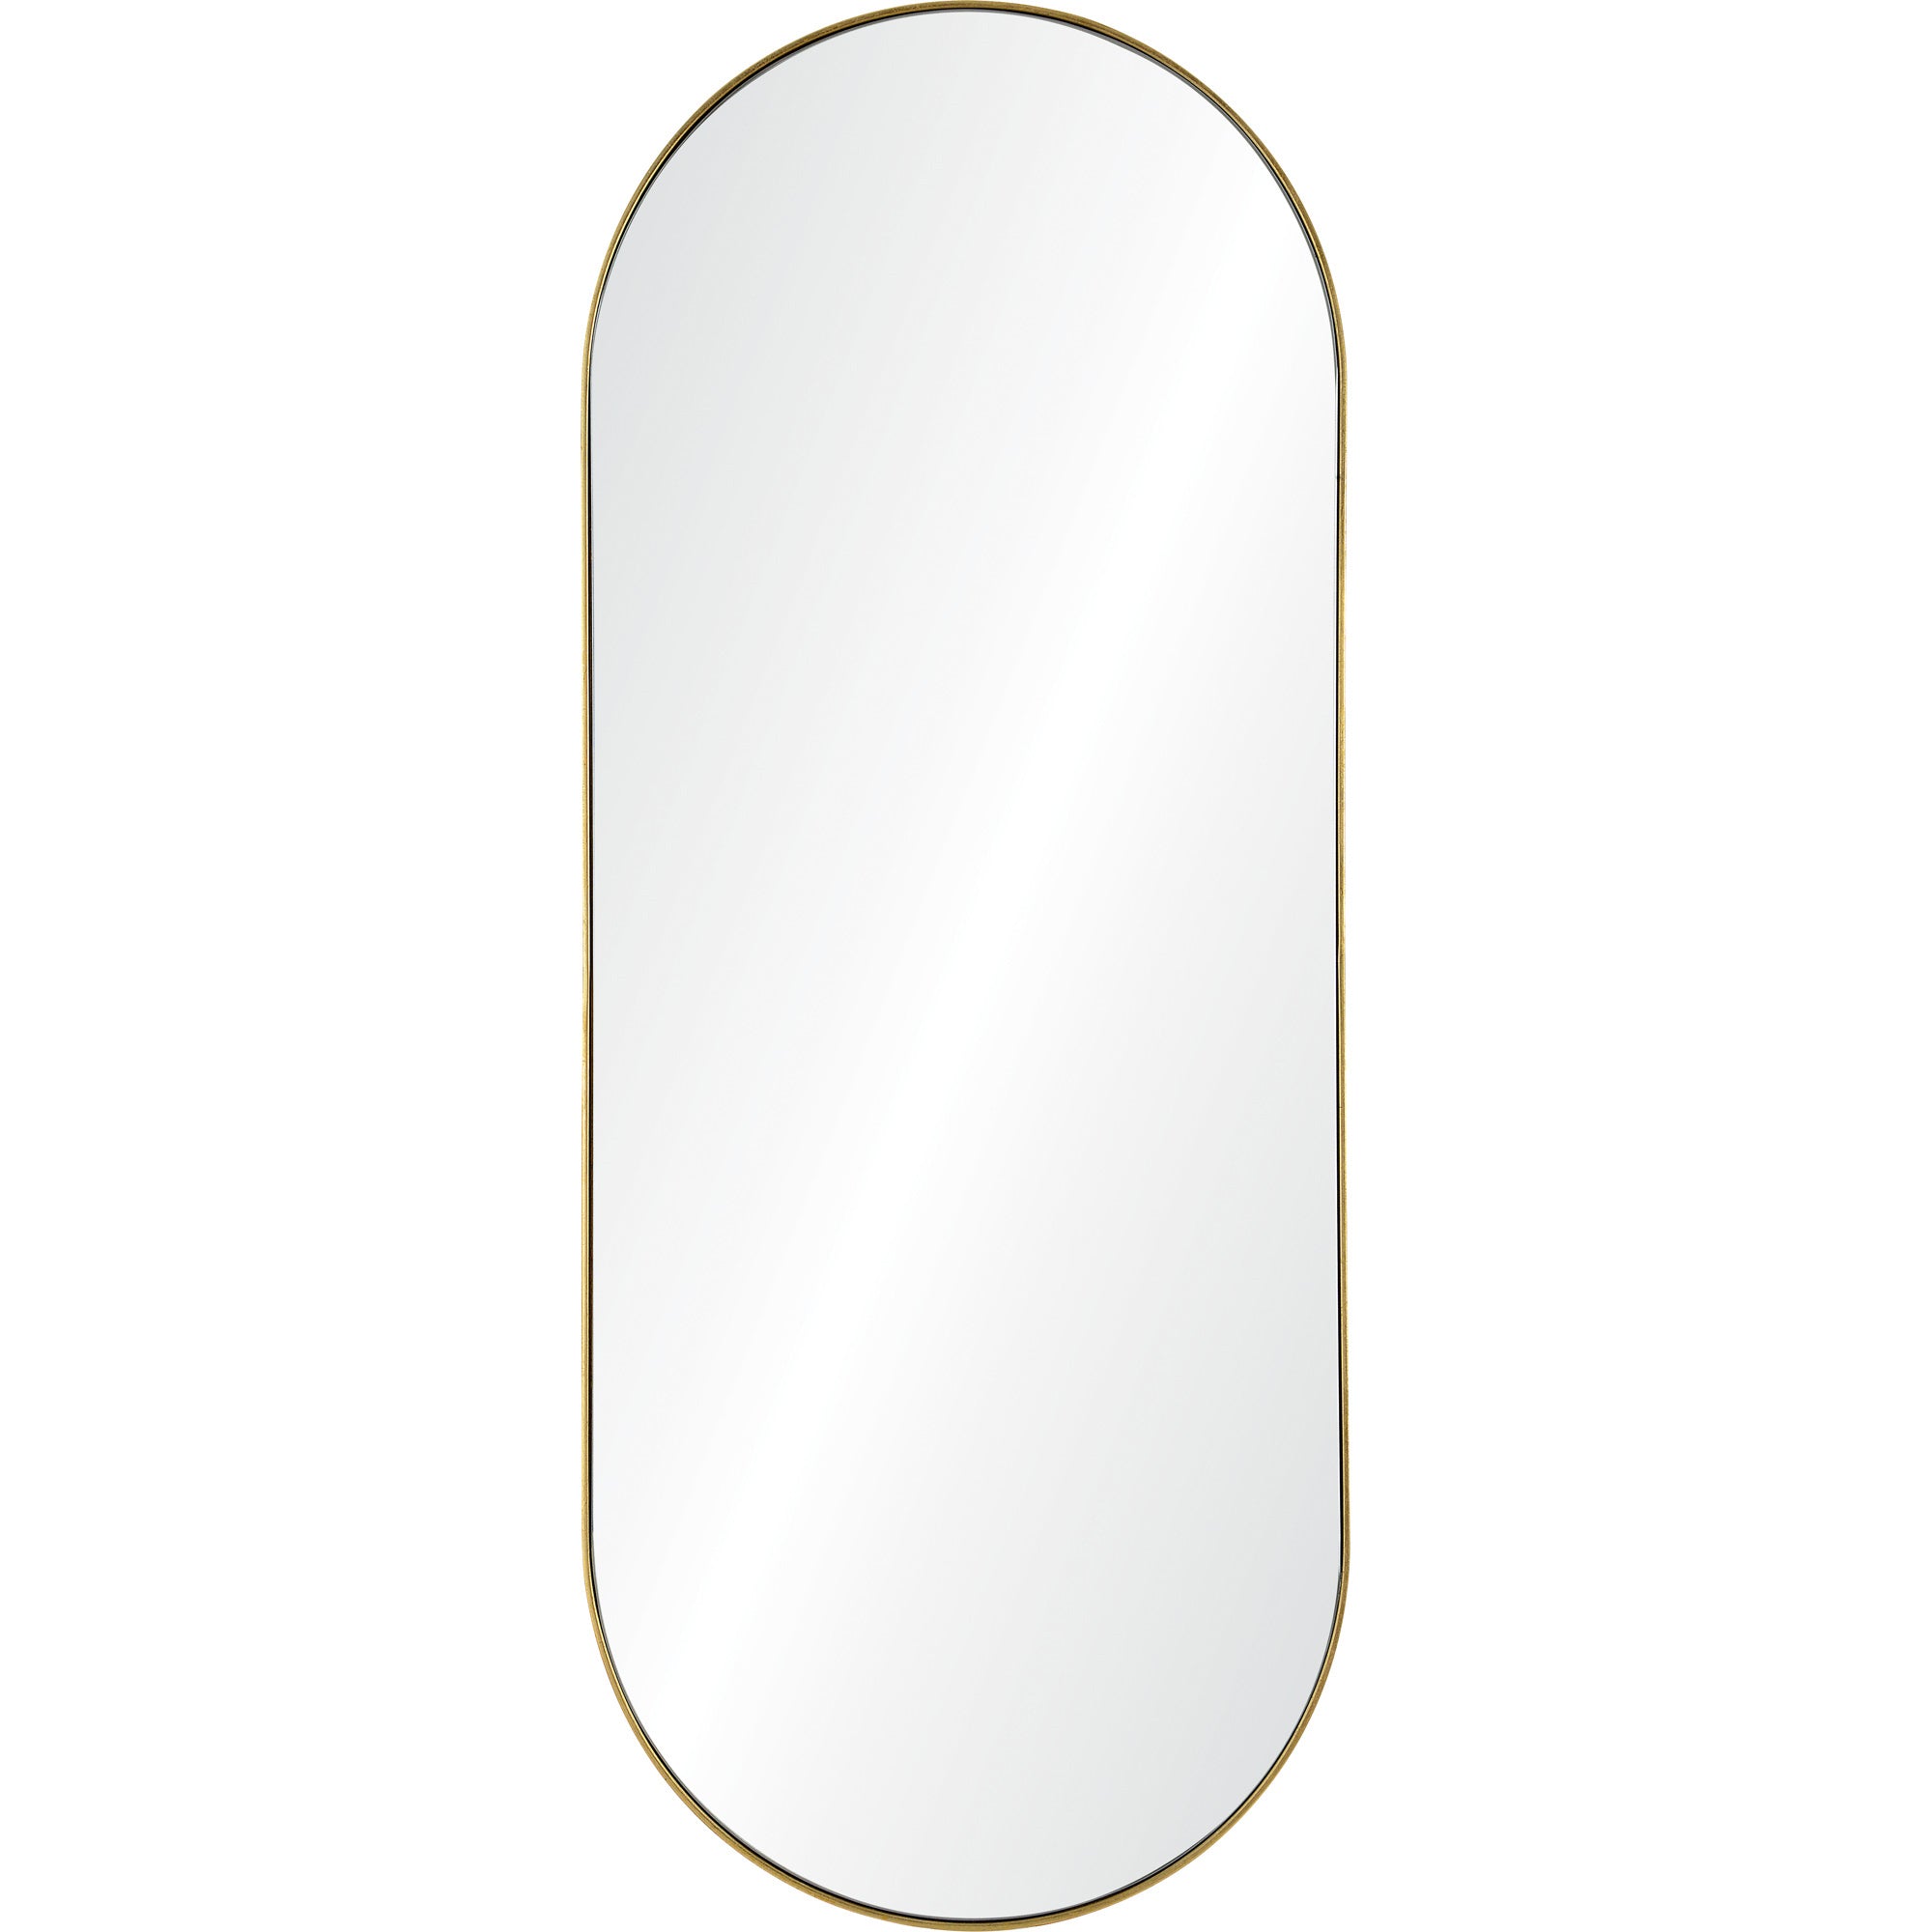 Maeve Gold Leaf Wall Mirror